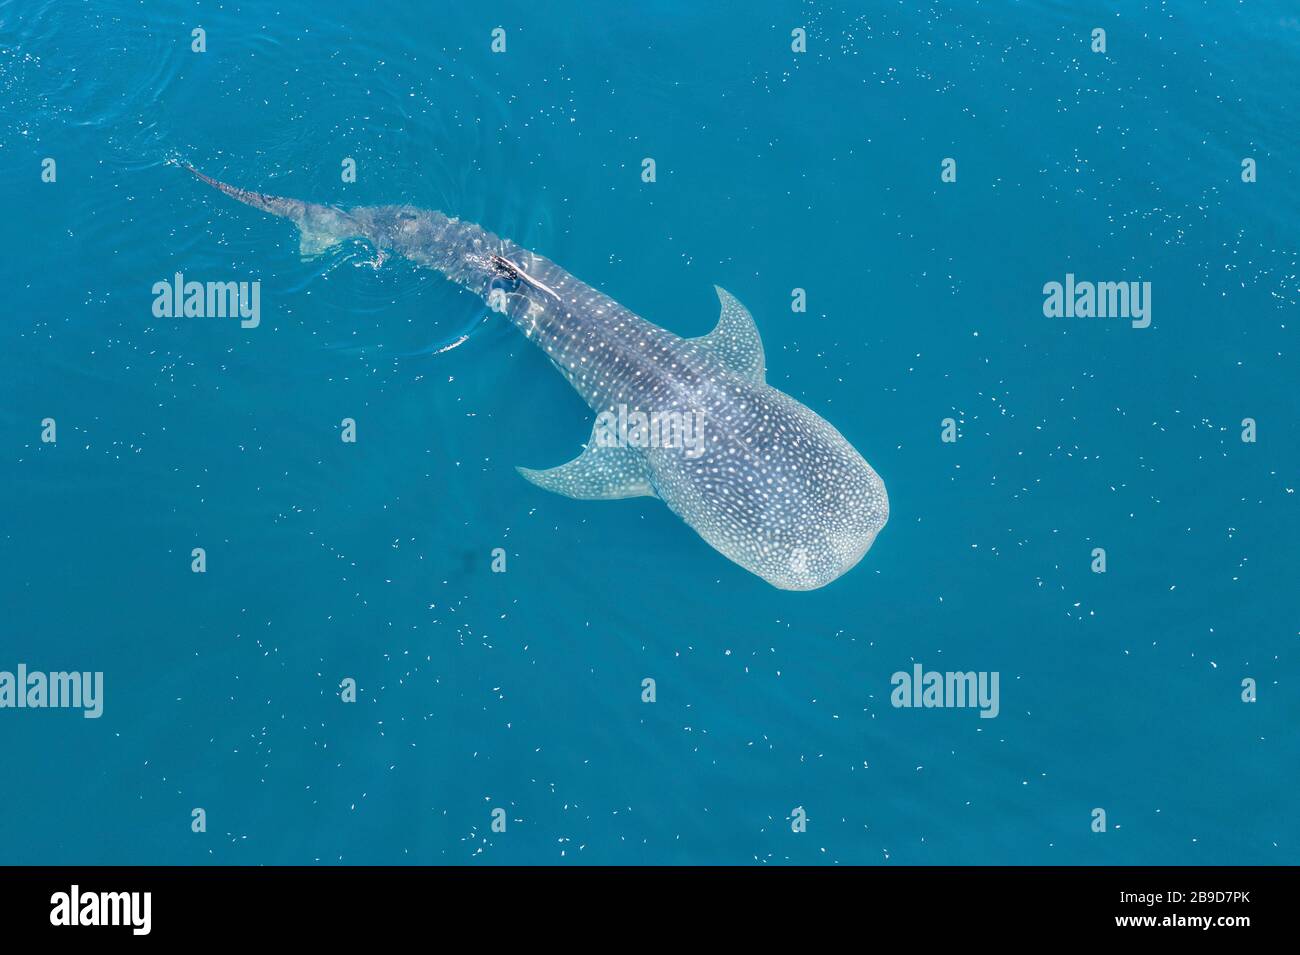 Un énorme requin baleine, Rhincodon typus, nage dans les eaux indonésiennes ensoleillées. Banque D'Images